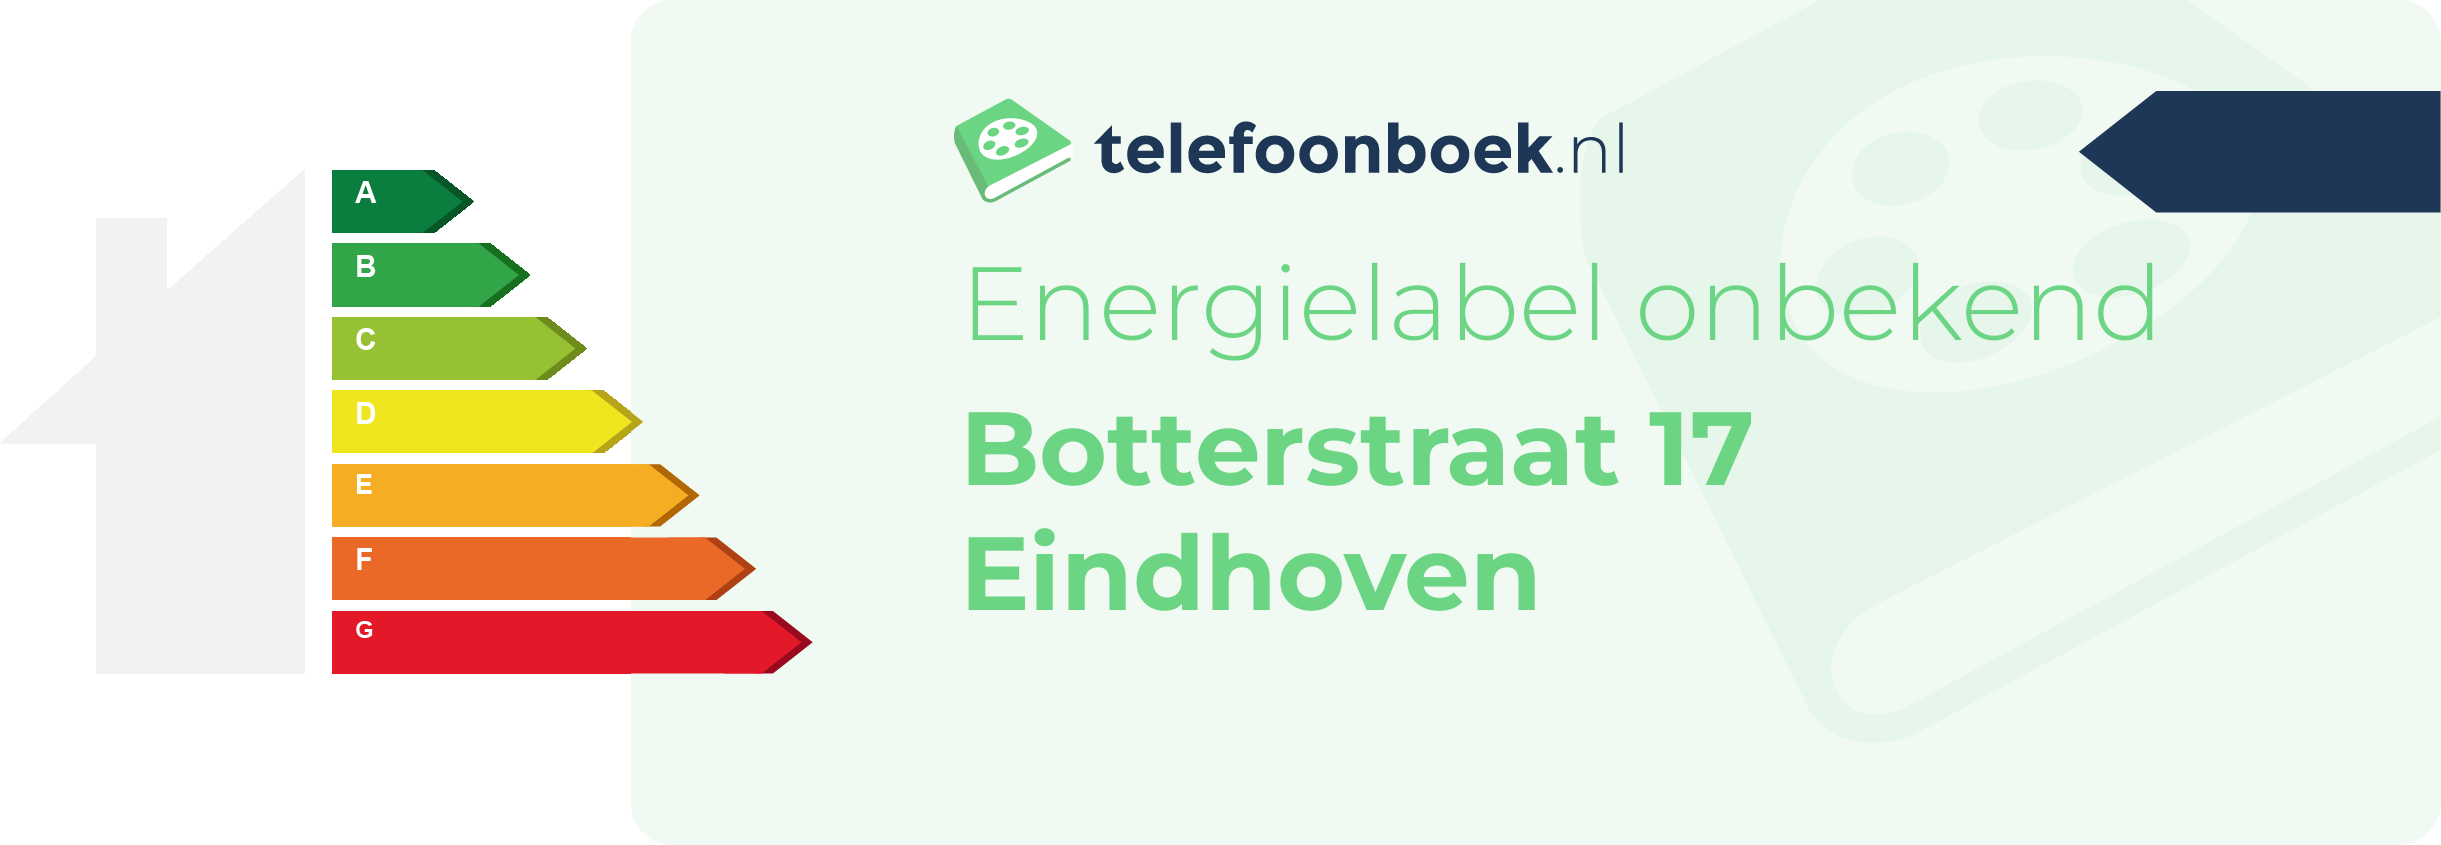 Energielabel Botterstraat 17 Eindhoven